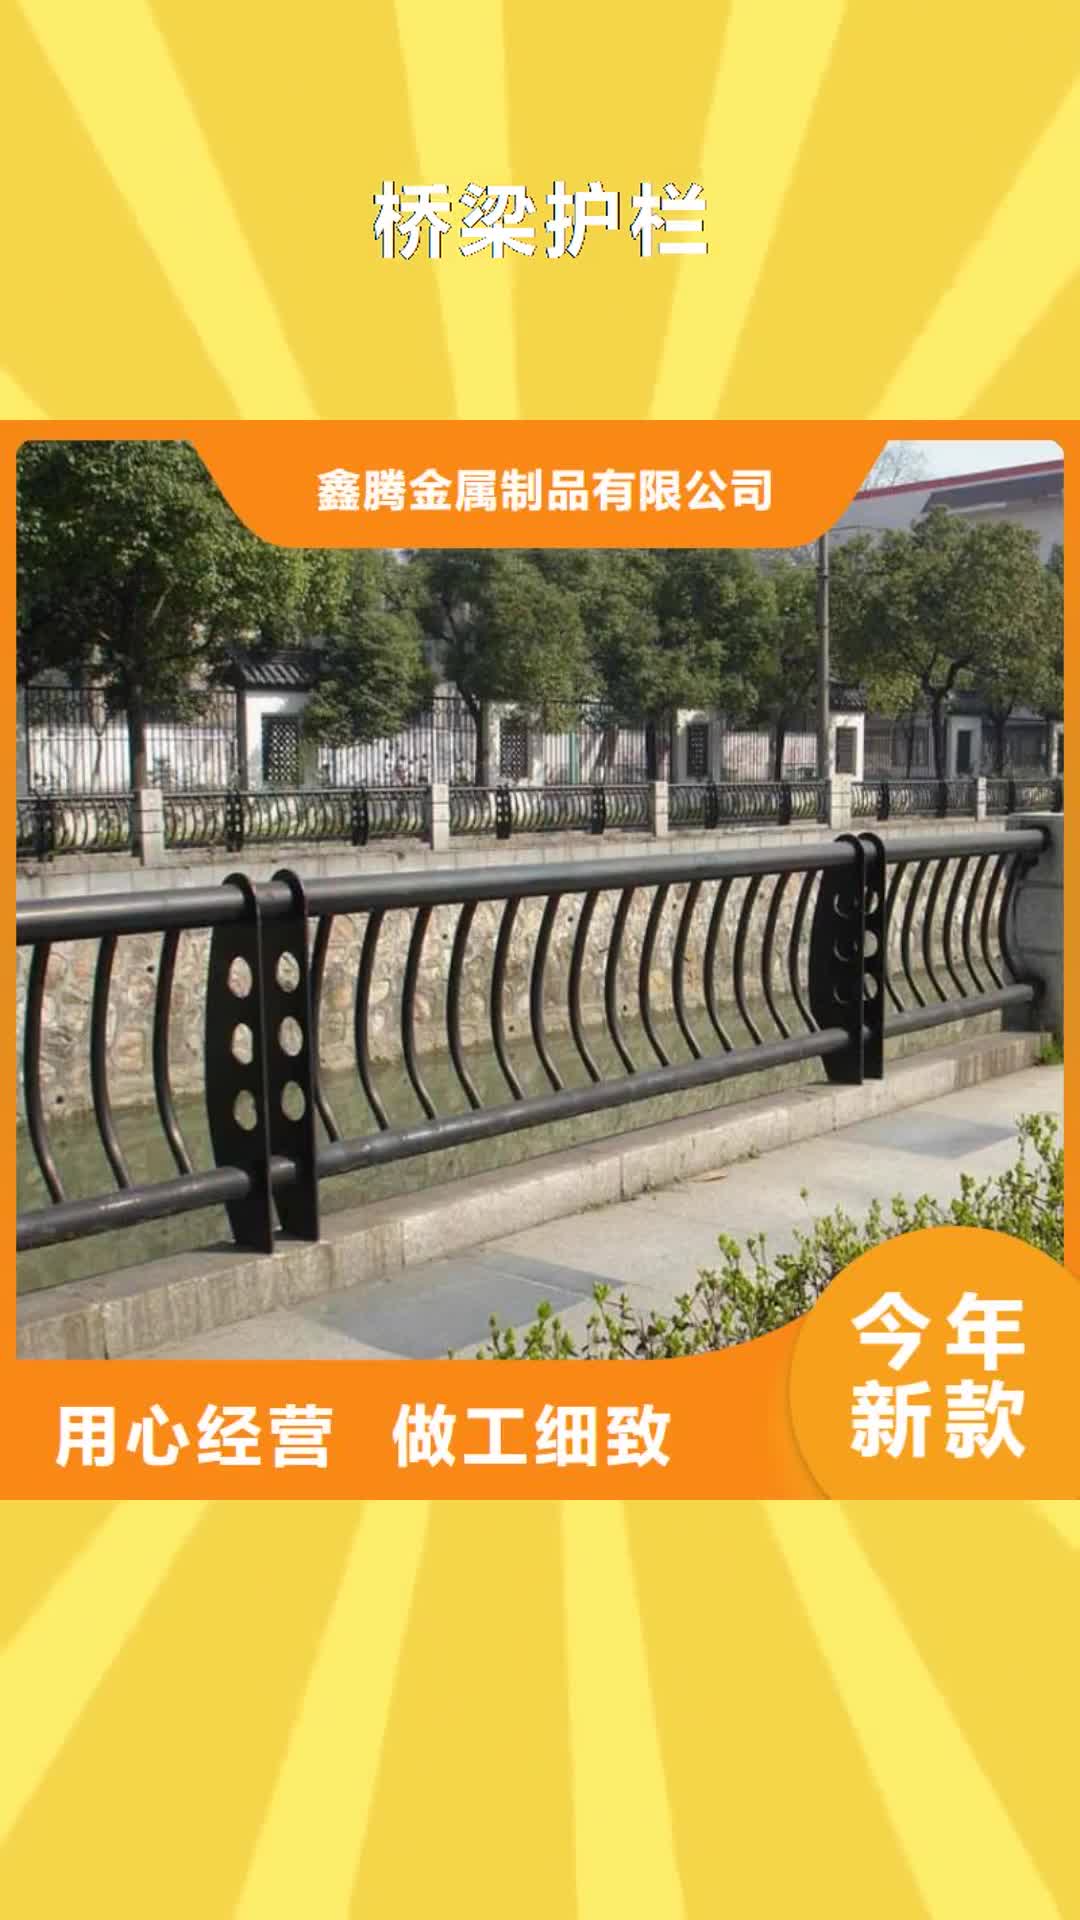 阳江 桥梁护栏【景观河道护栏】设计制造销售服务一体